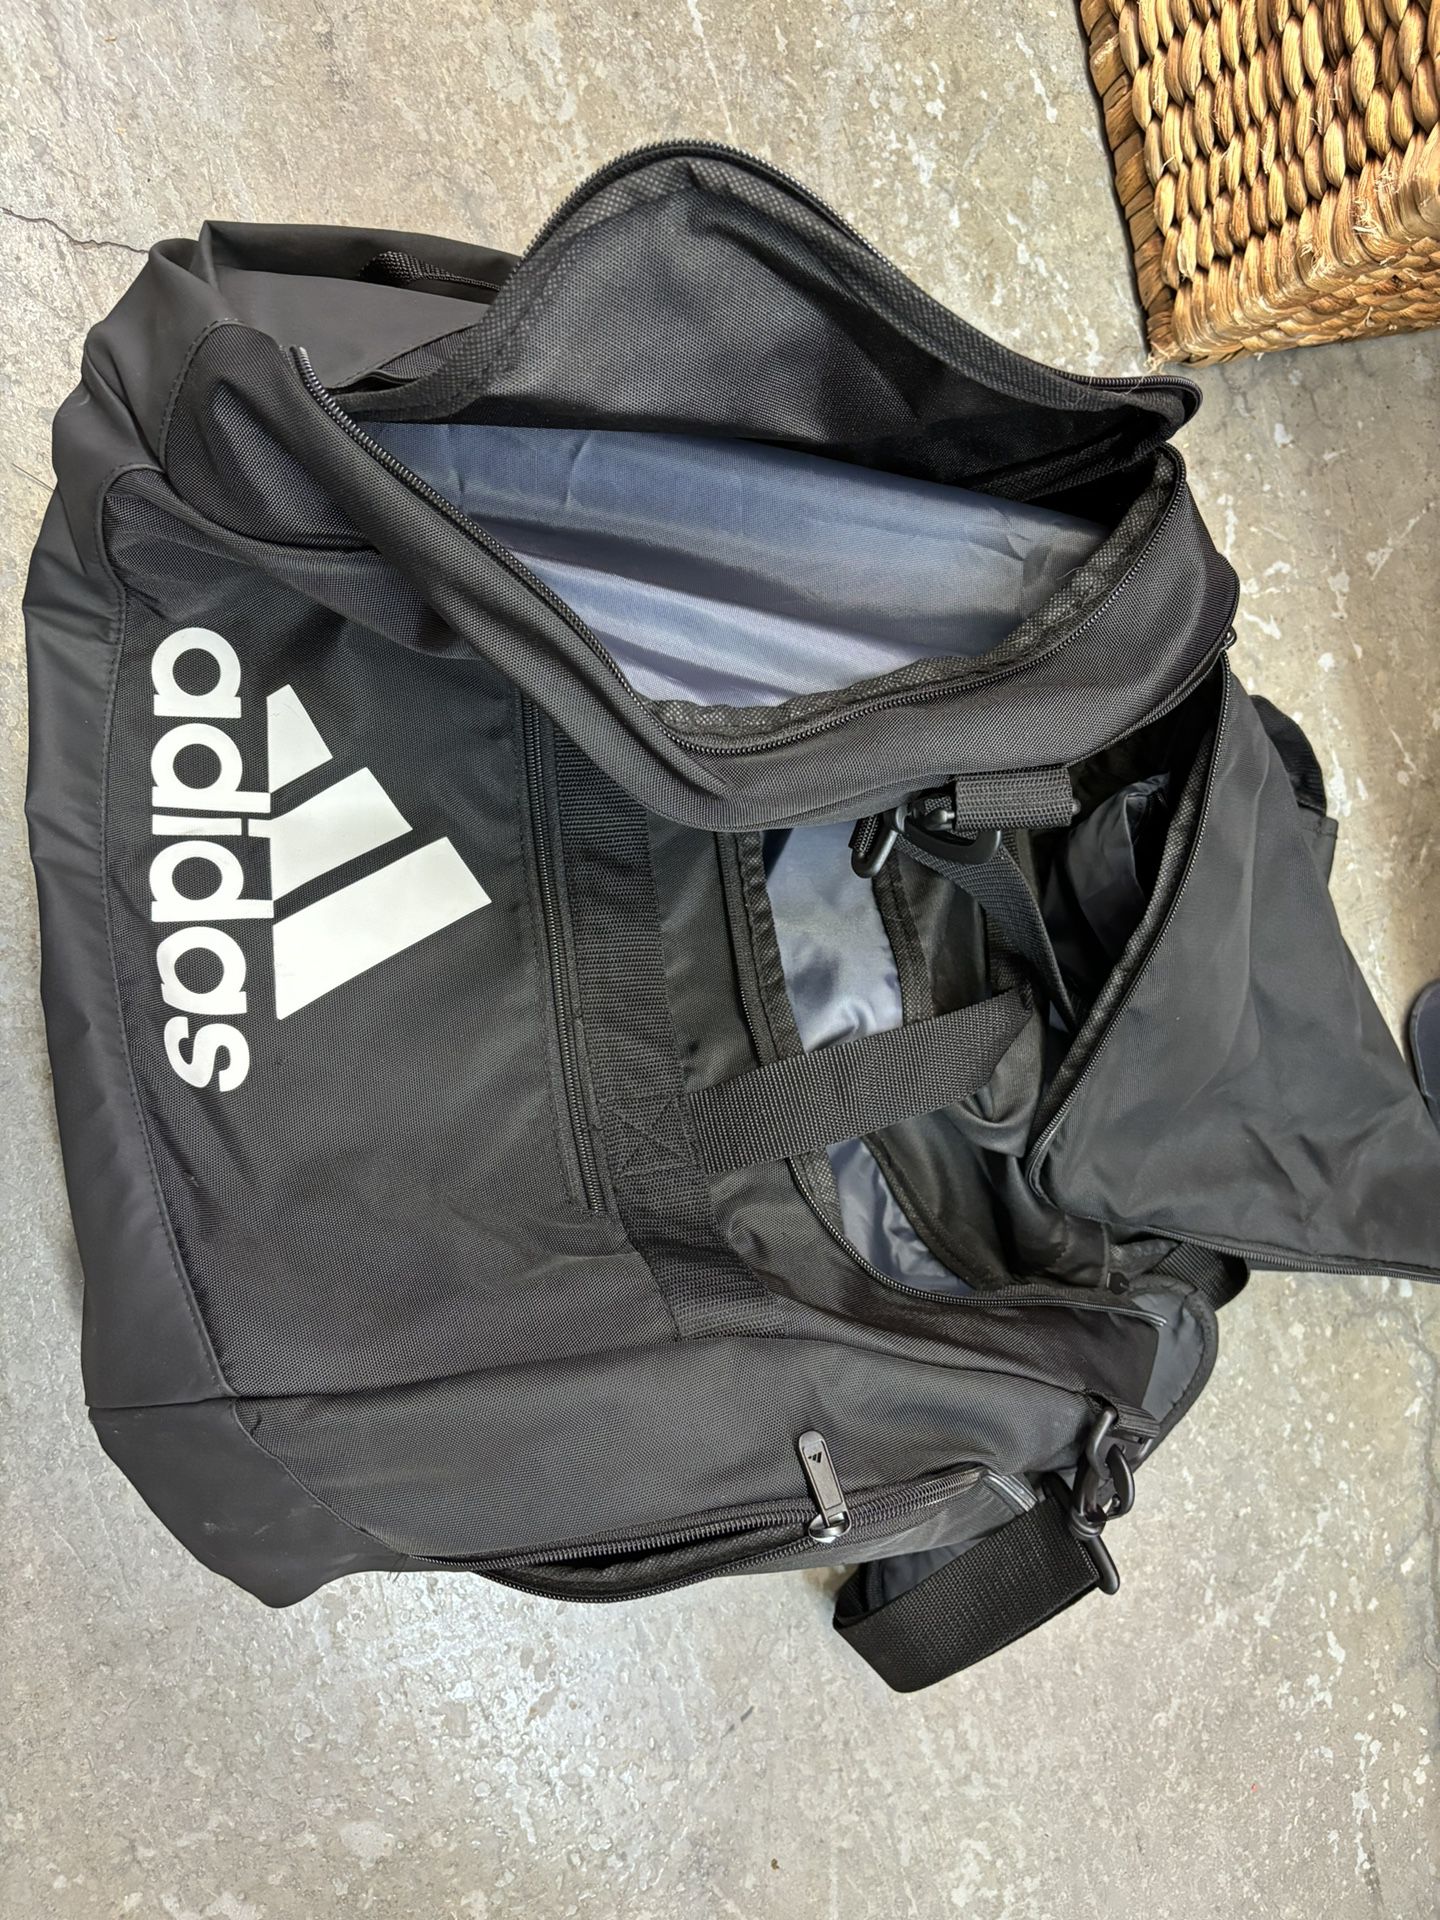 Adidas Large Duffle bag 